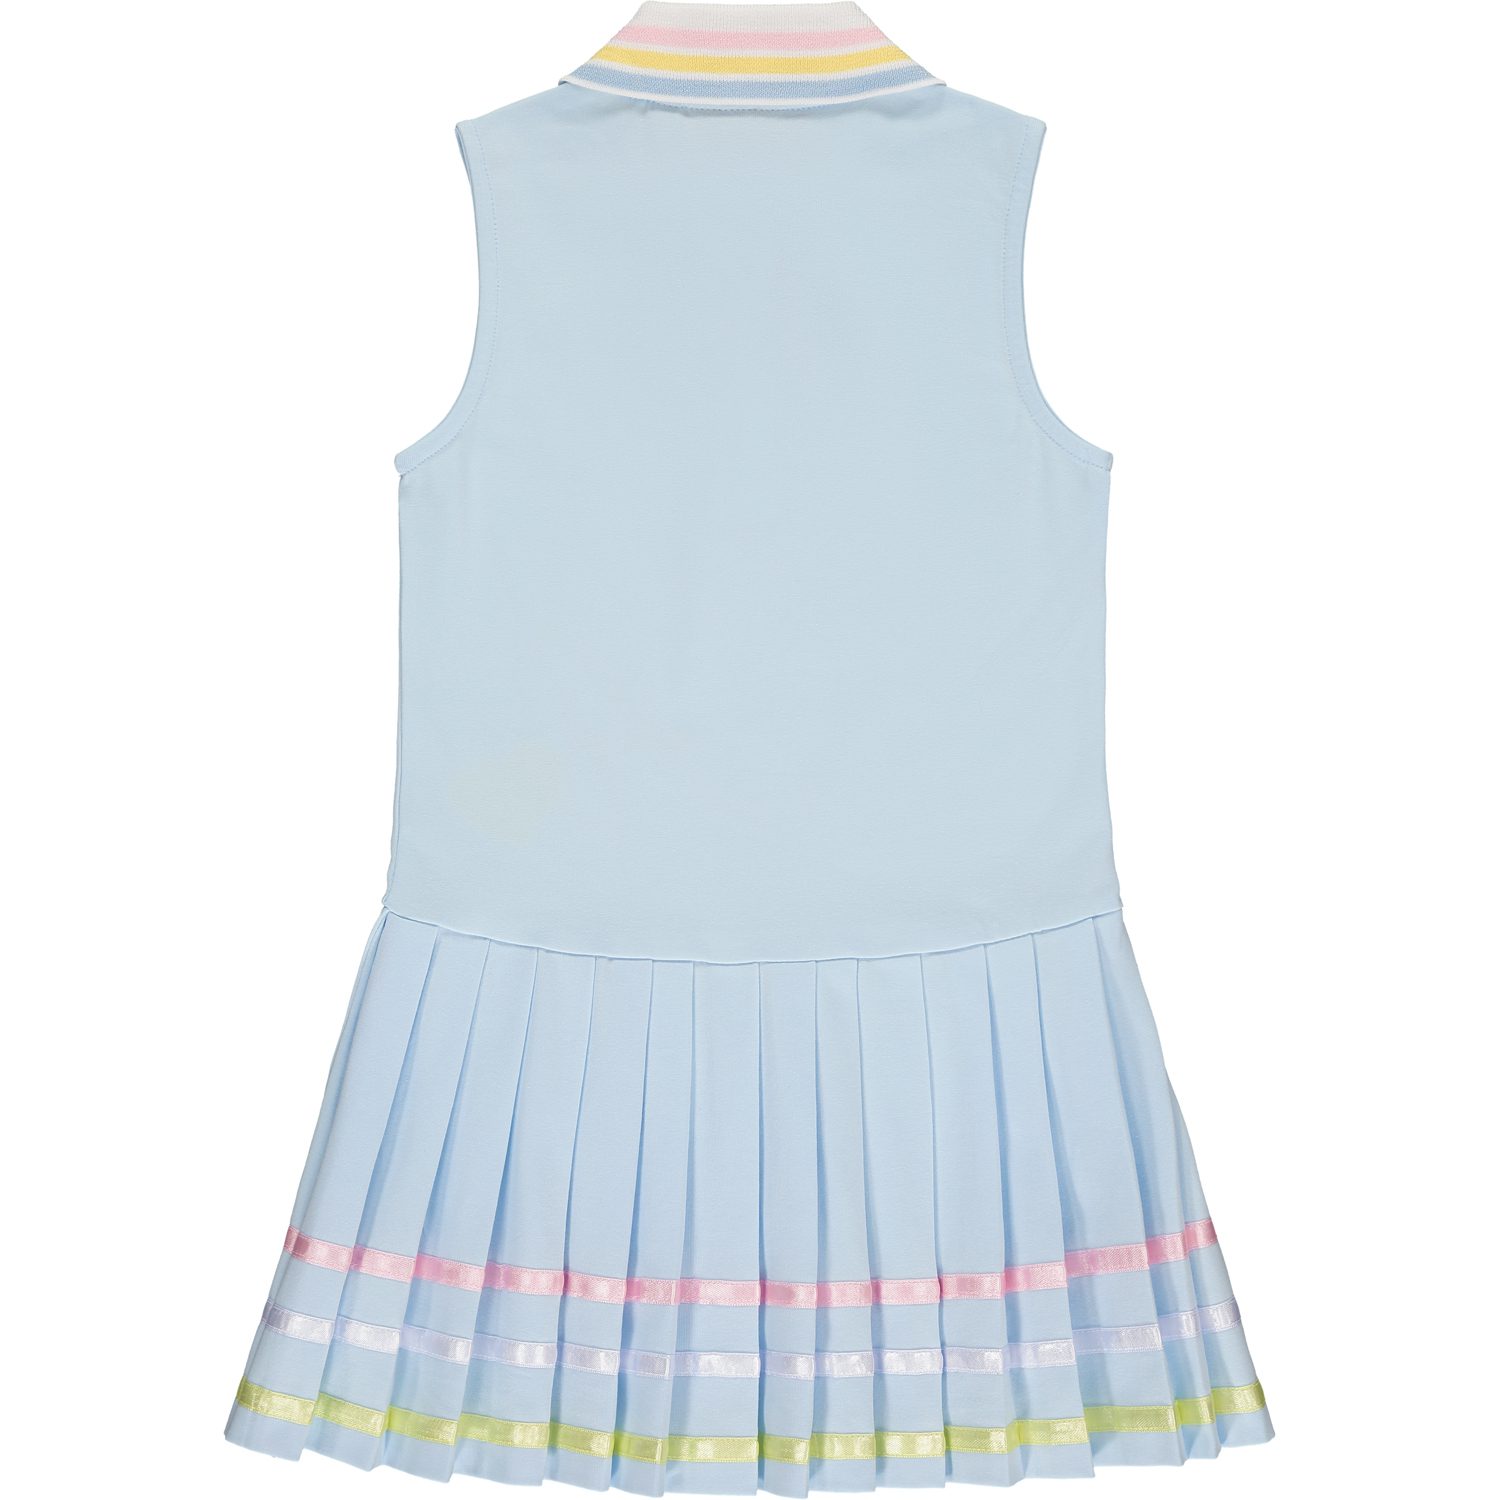 A’dee Veronica tennis jurk blauw achterkant